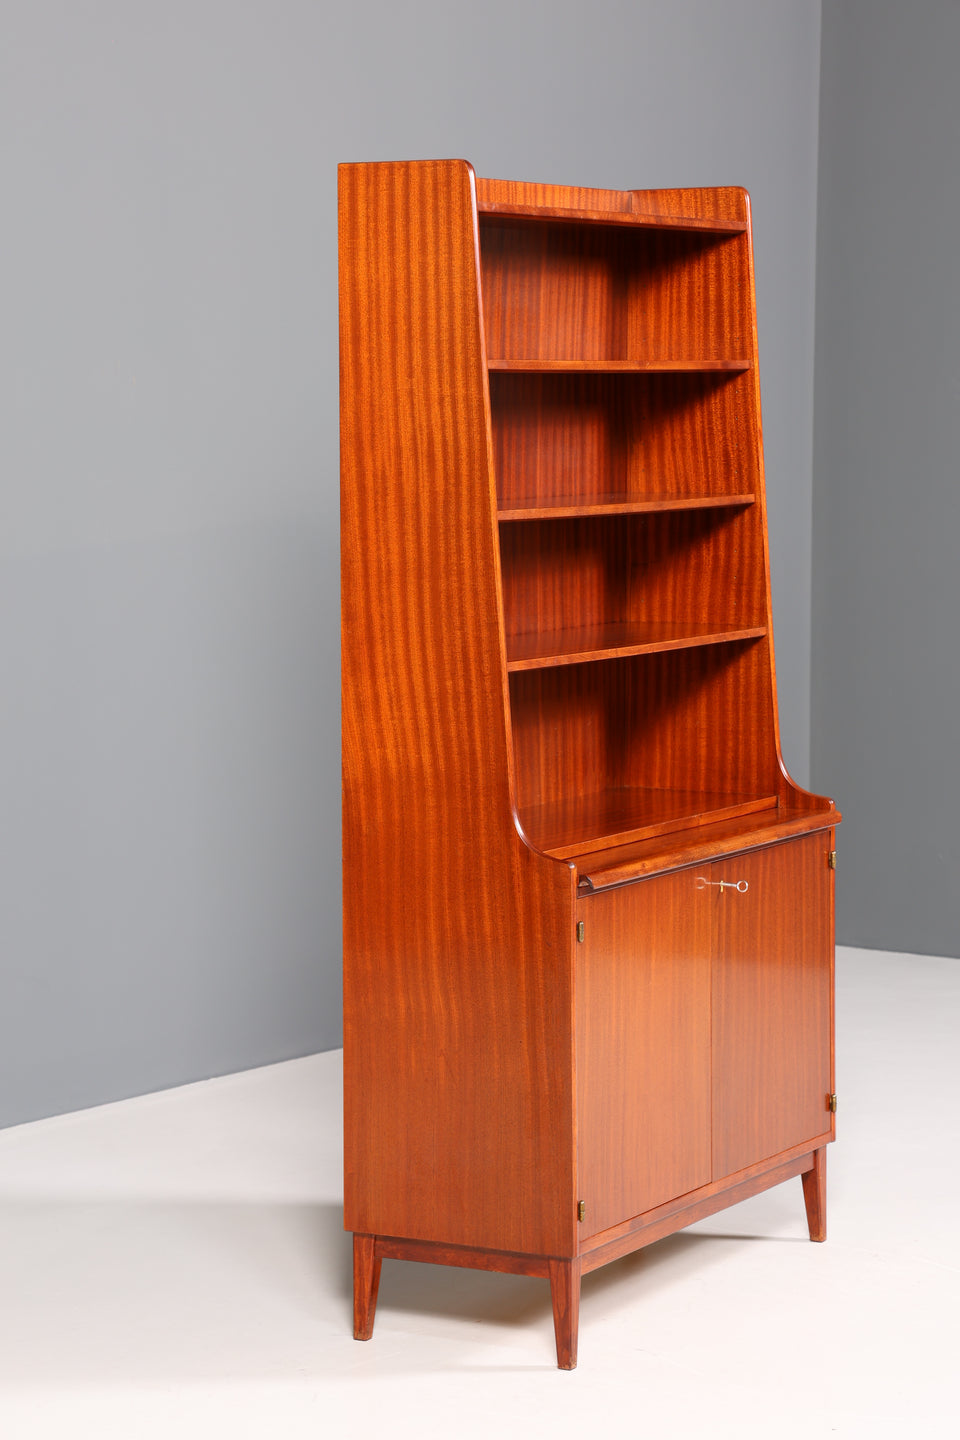 Traumhafter Mid Century Schrank Bücherregal Vintage Highboard Retro Sekretär Holz Regal 60s